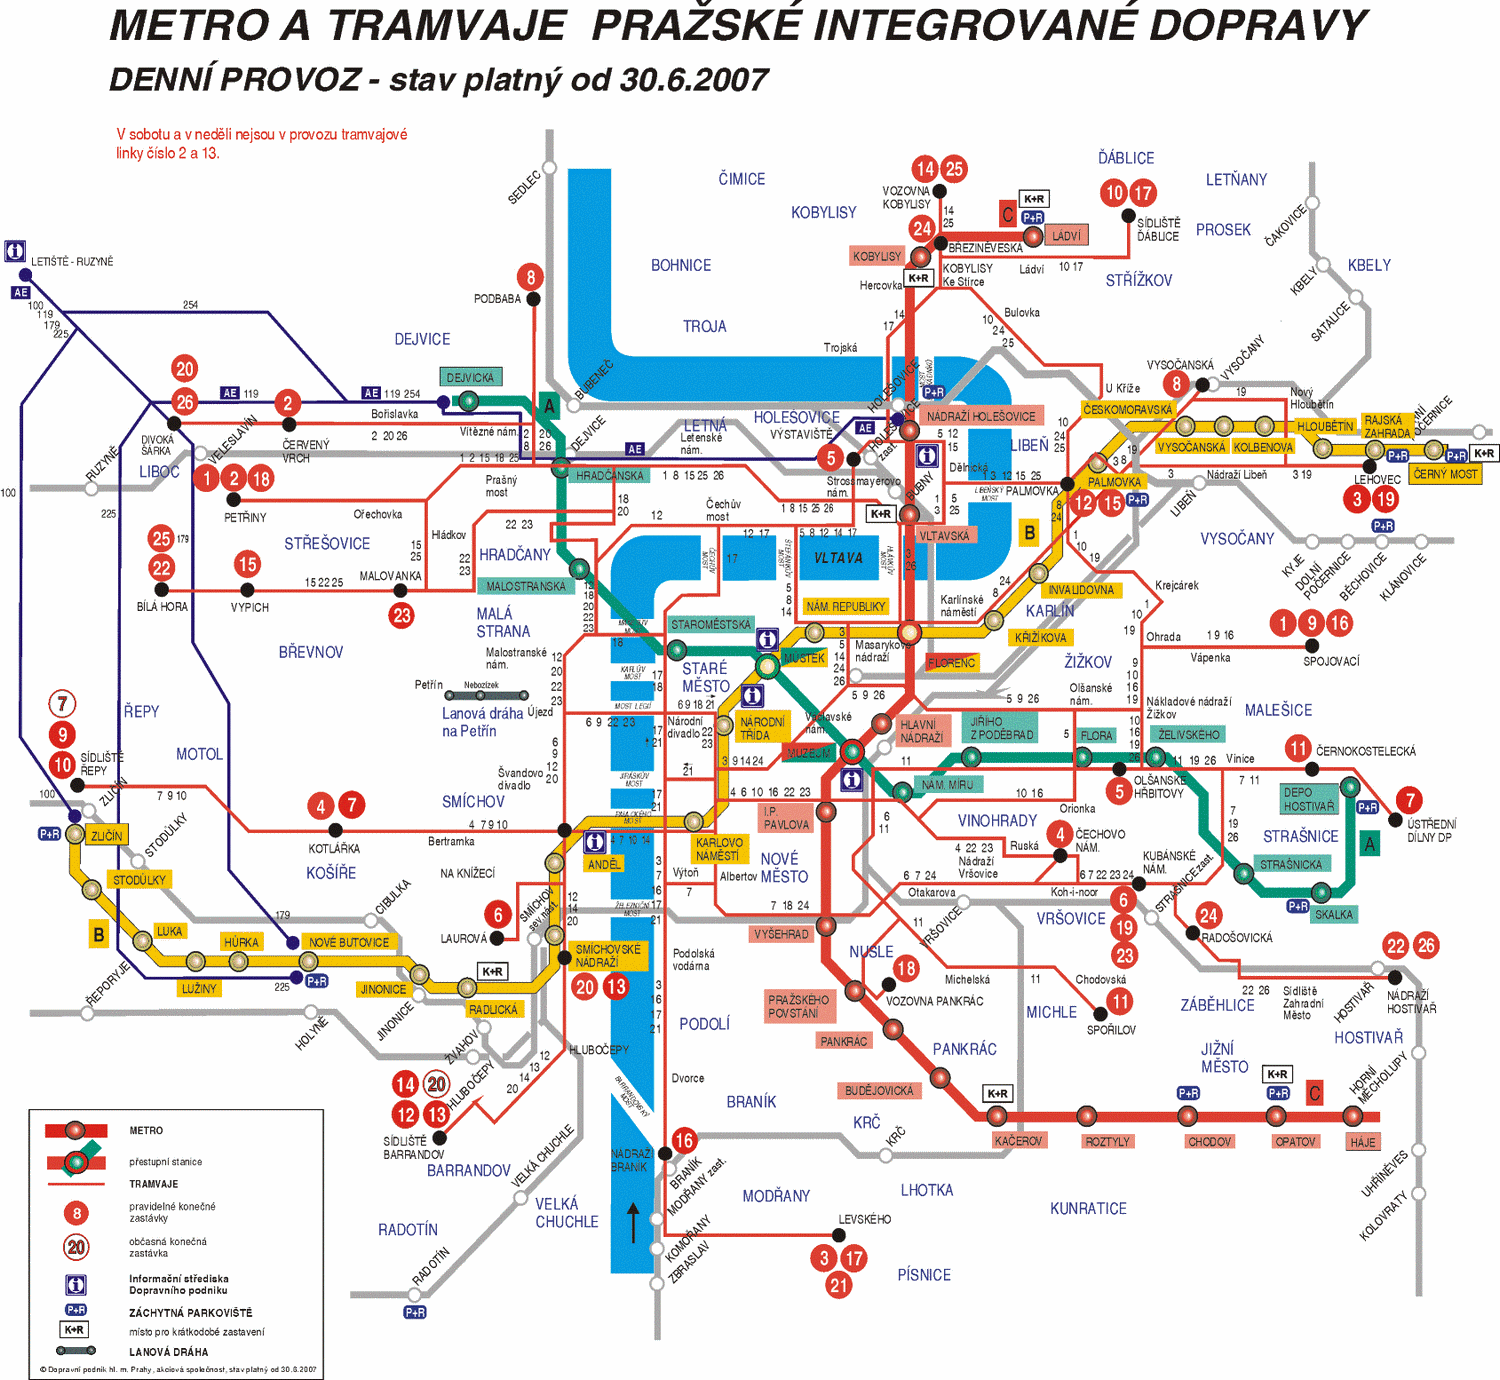 Prague Metro Plan For 2100 Transport Map Subway Map Metro Map | Images ...